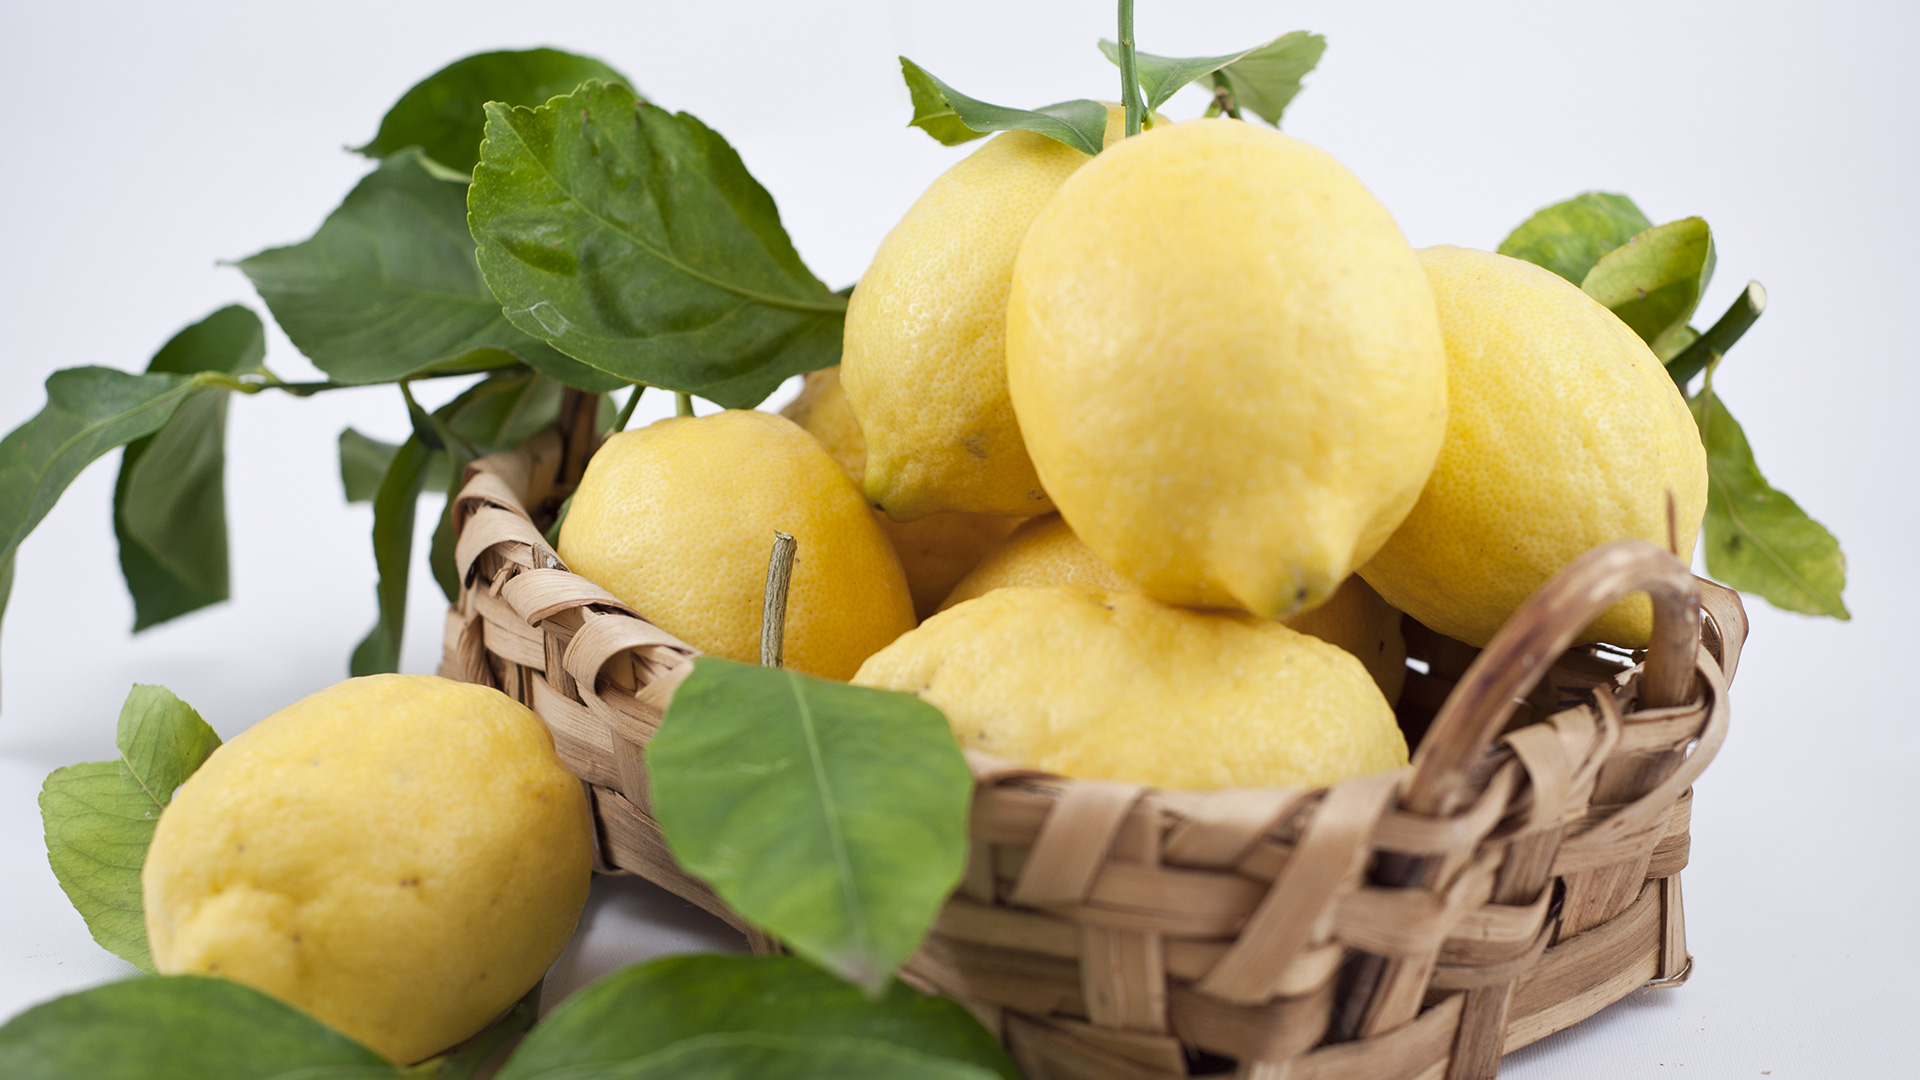 Limoni freschi di Amalfi - Distilleria del Limoncino Amalfi